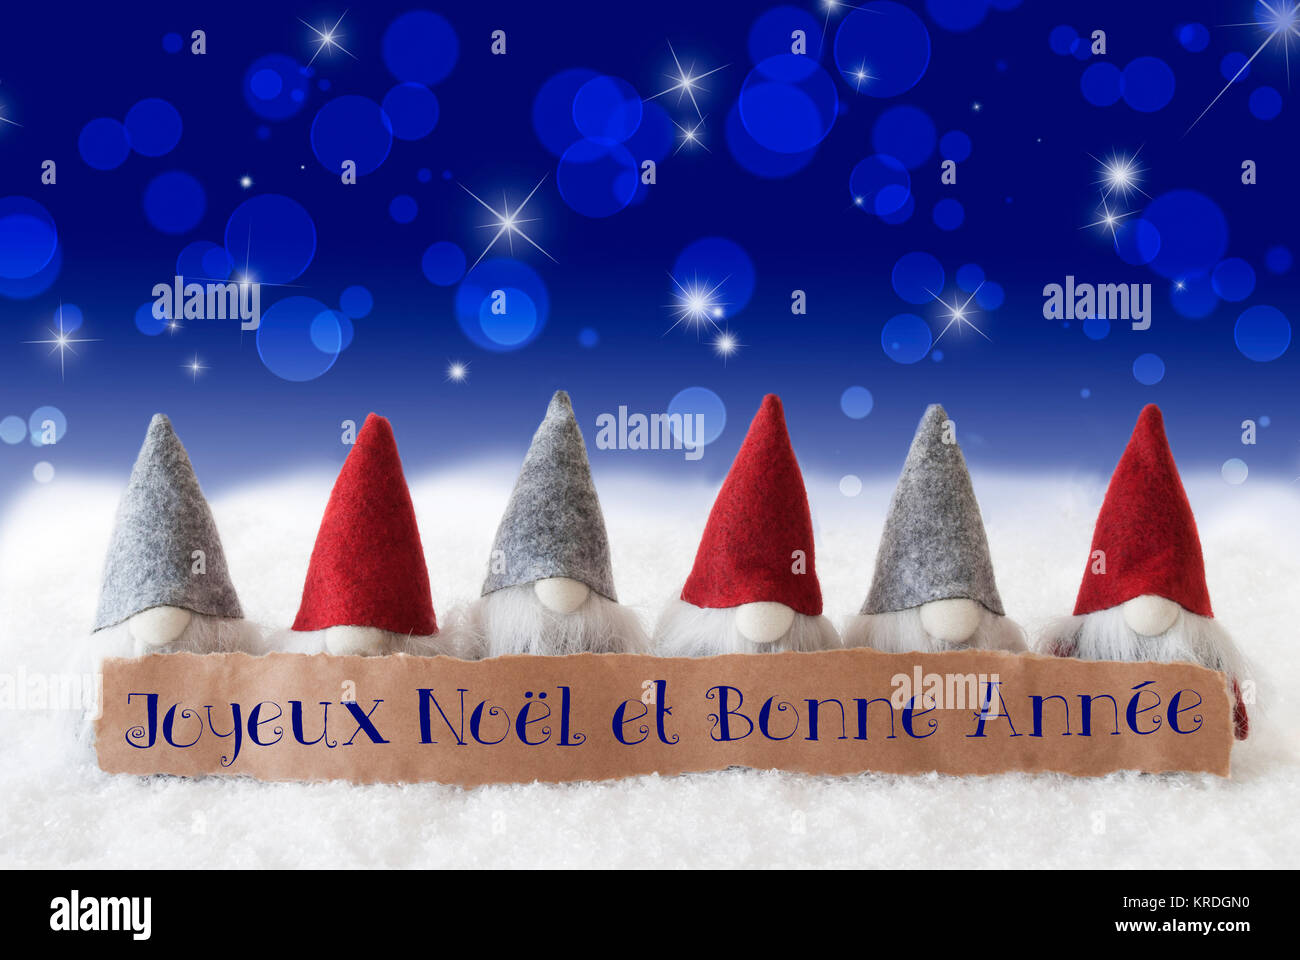 Nhãn với văn bản tiếng Pháp Joyeux Noel Et Bonne Annee có nghĩa là Merry chắc hẳn sẽ khiến bạn liên tưởng đến một mùa Giáng sinh thật đặc biệt. Hãy xem hình ảnh liên quan để thậm chí còn tự học thêm những từ vựng chào đón Giáng sinh!